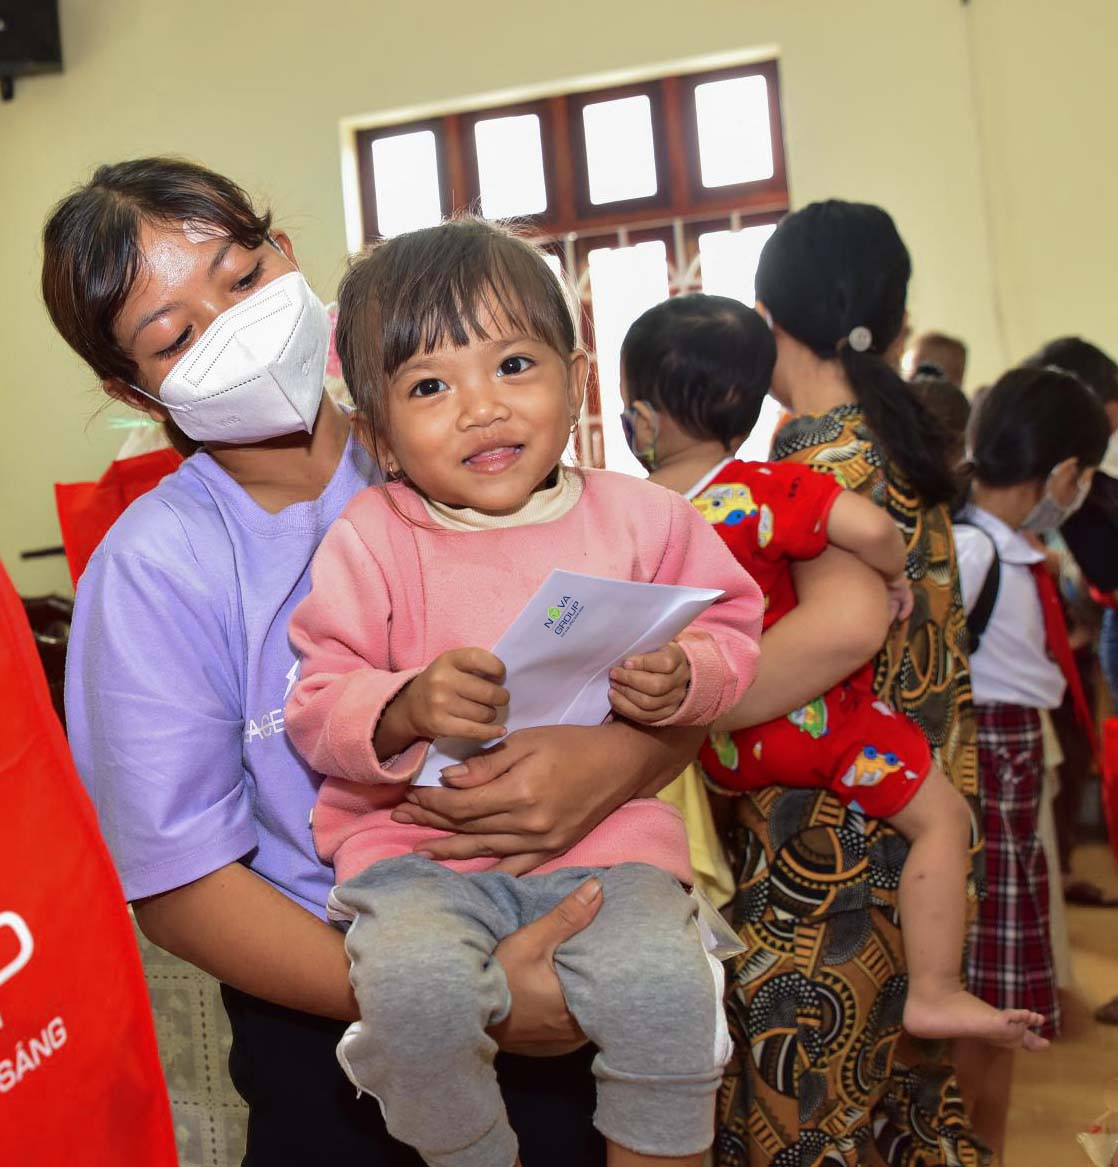 Cùng với Hội Bảo trợ Bệnh nhân nghèo TP HCM, NovaGroup mang đến cơ hội phẫu thuật tim miễn phí cho hàng trăm trẻ em nghèo trên cả nước trong suốt 5 năm qua. Đến nay, các em đều có trái tim khỏe mạnh và cuộc sống sinh hoạt trở lại bình thường.